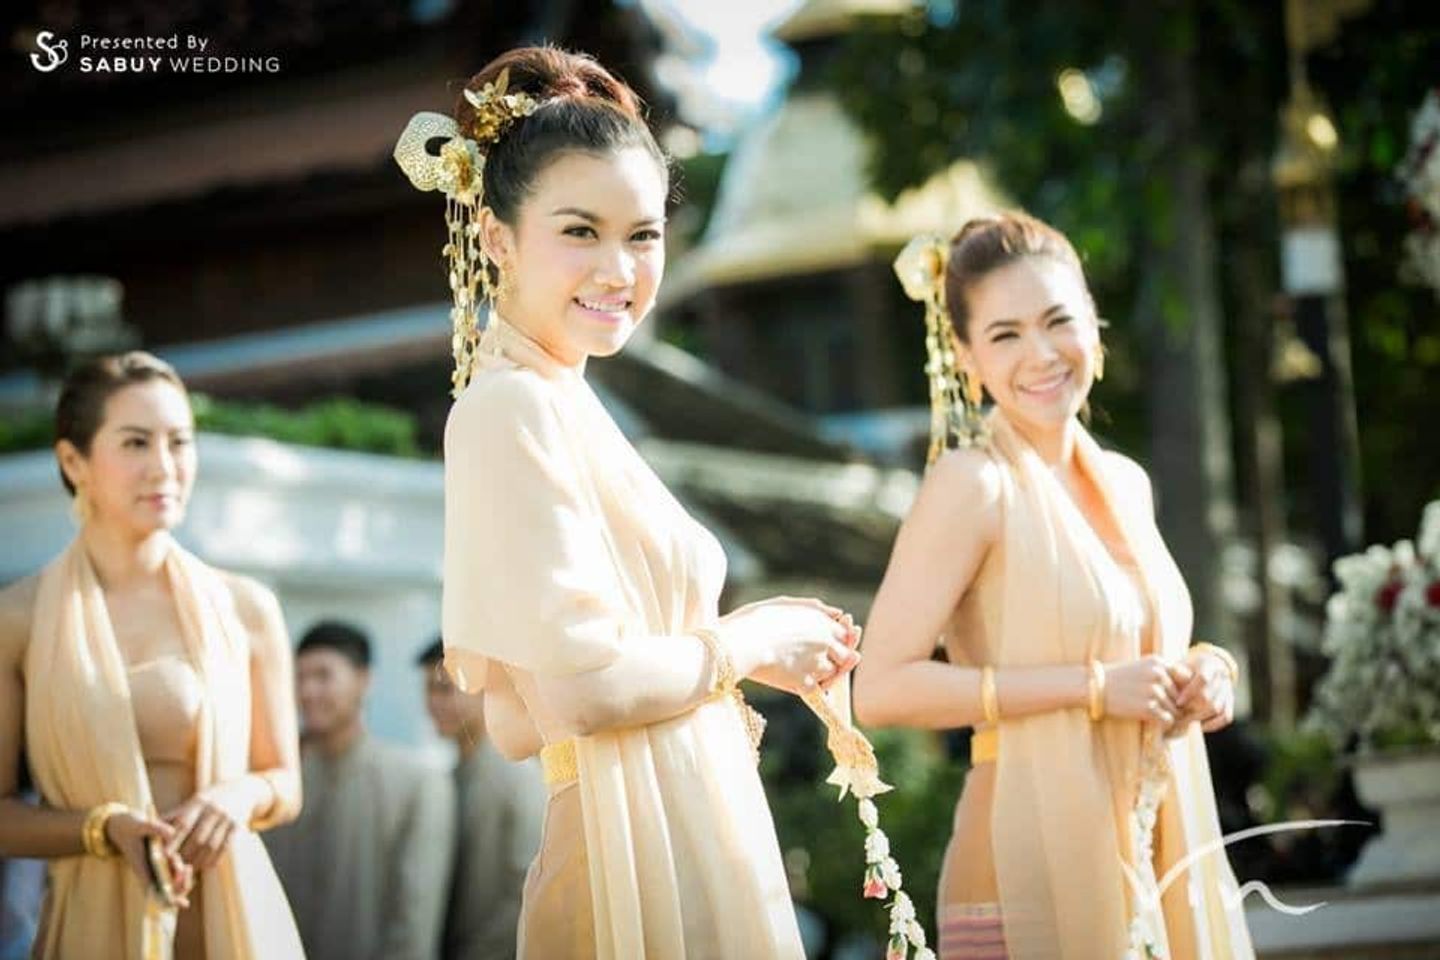 เพื่อนเจ้าสาว,ชุดเพื่อนเจ้าสาว,ชุดไทย,งานหมั้น,พิธีหมั้น,งานแต่งตอนเช้า,พิธีแต่งงาน,พิธีแต่งงานแบบไทย 15 ชุดไทยเพื่อนเจ้าสาว สวยงามตามประเพณีไทย